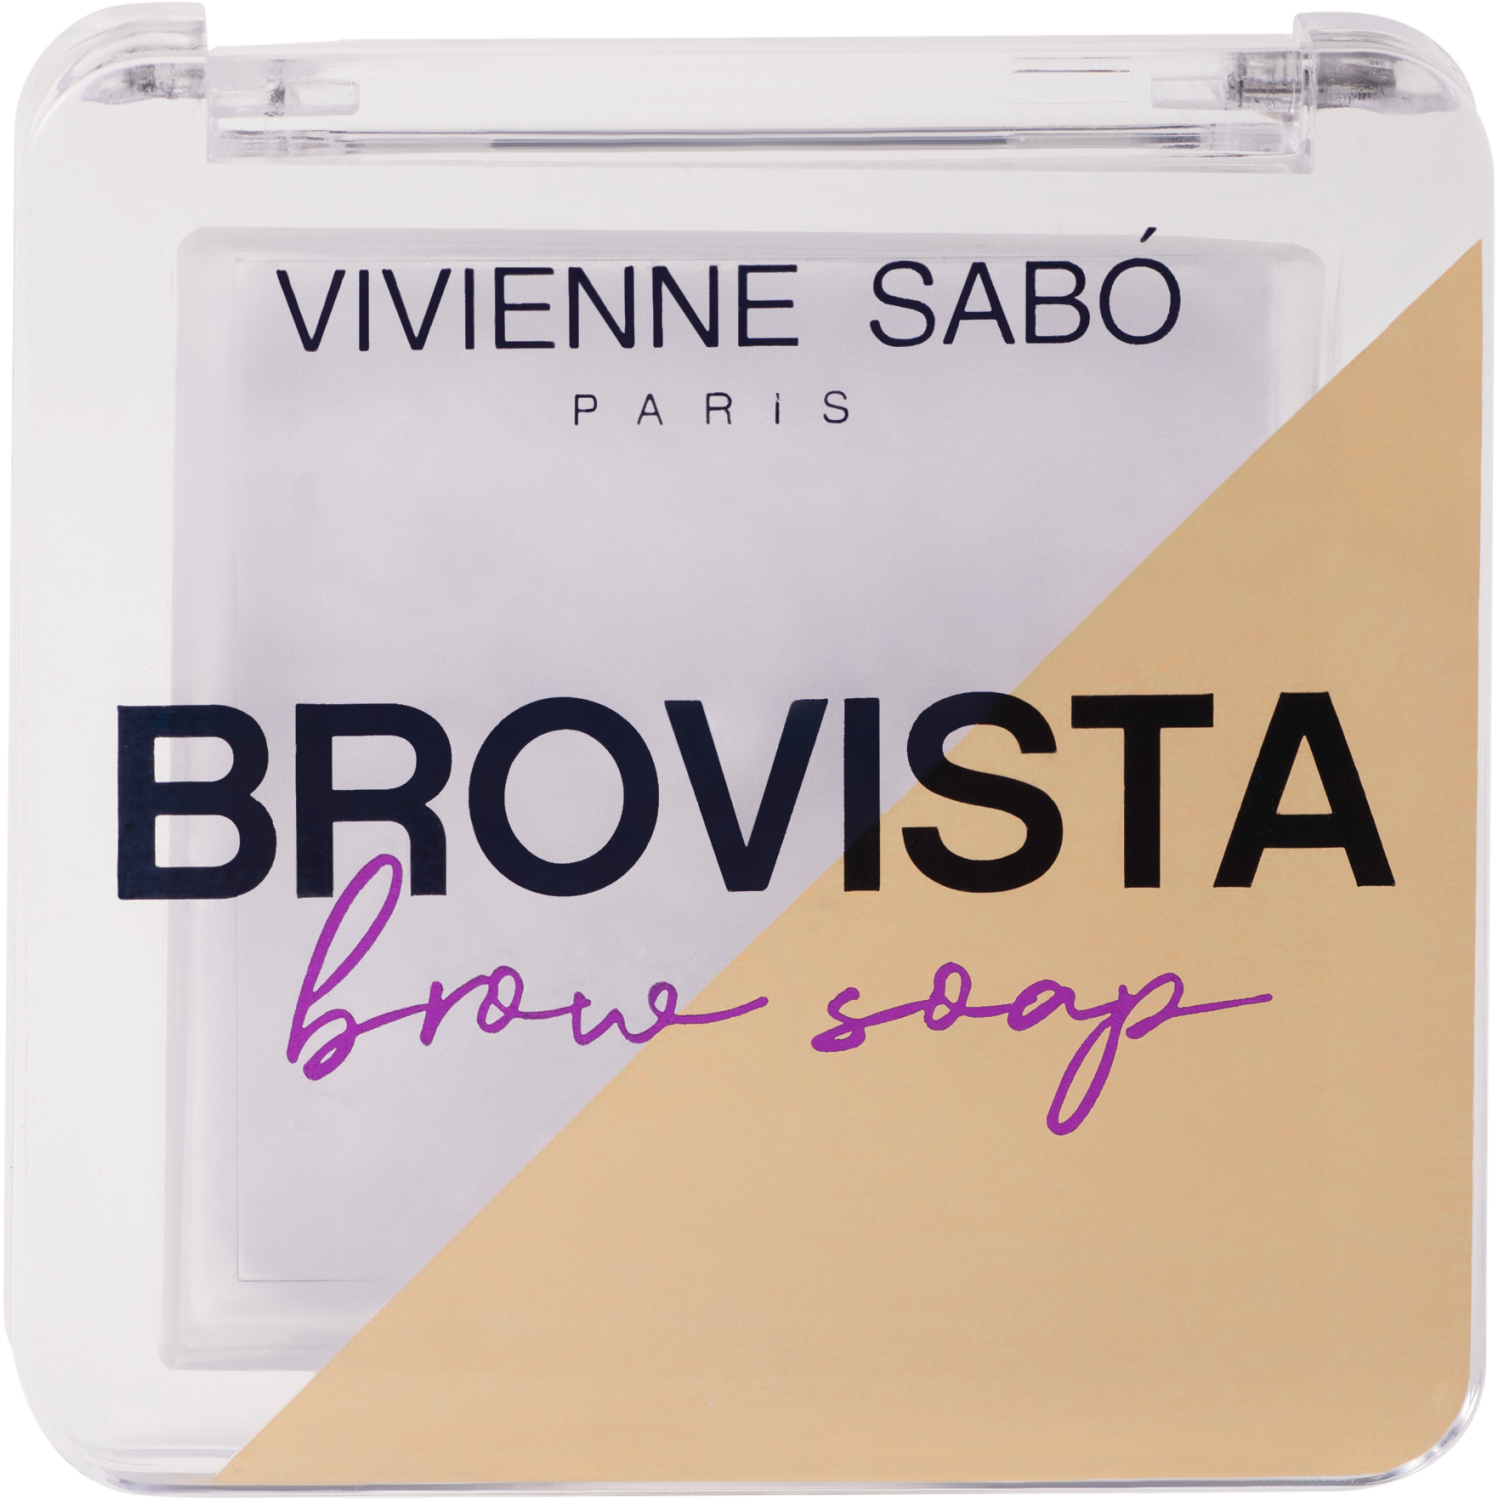 Фиксатор для бровей Vivienne Sabo Brovista brow soap, эффект ламинирования бровей, прозрачно-белесый, 3гр. карандаш для бровей механический тон 303 smoky